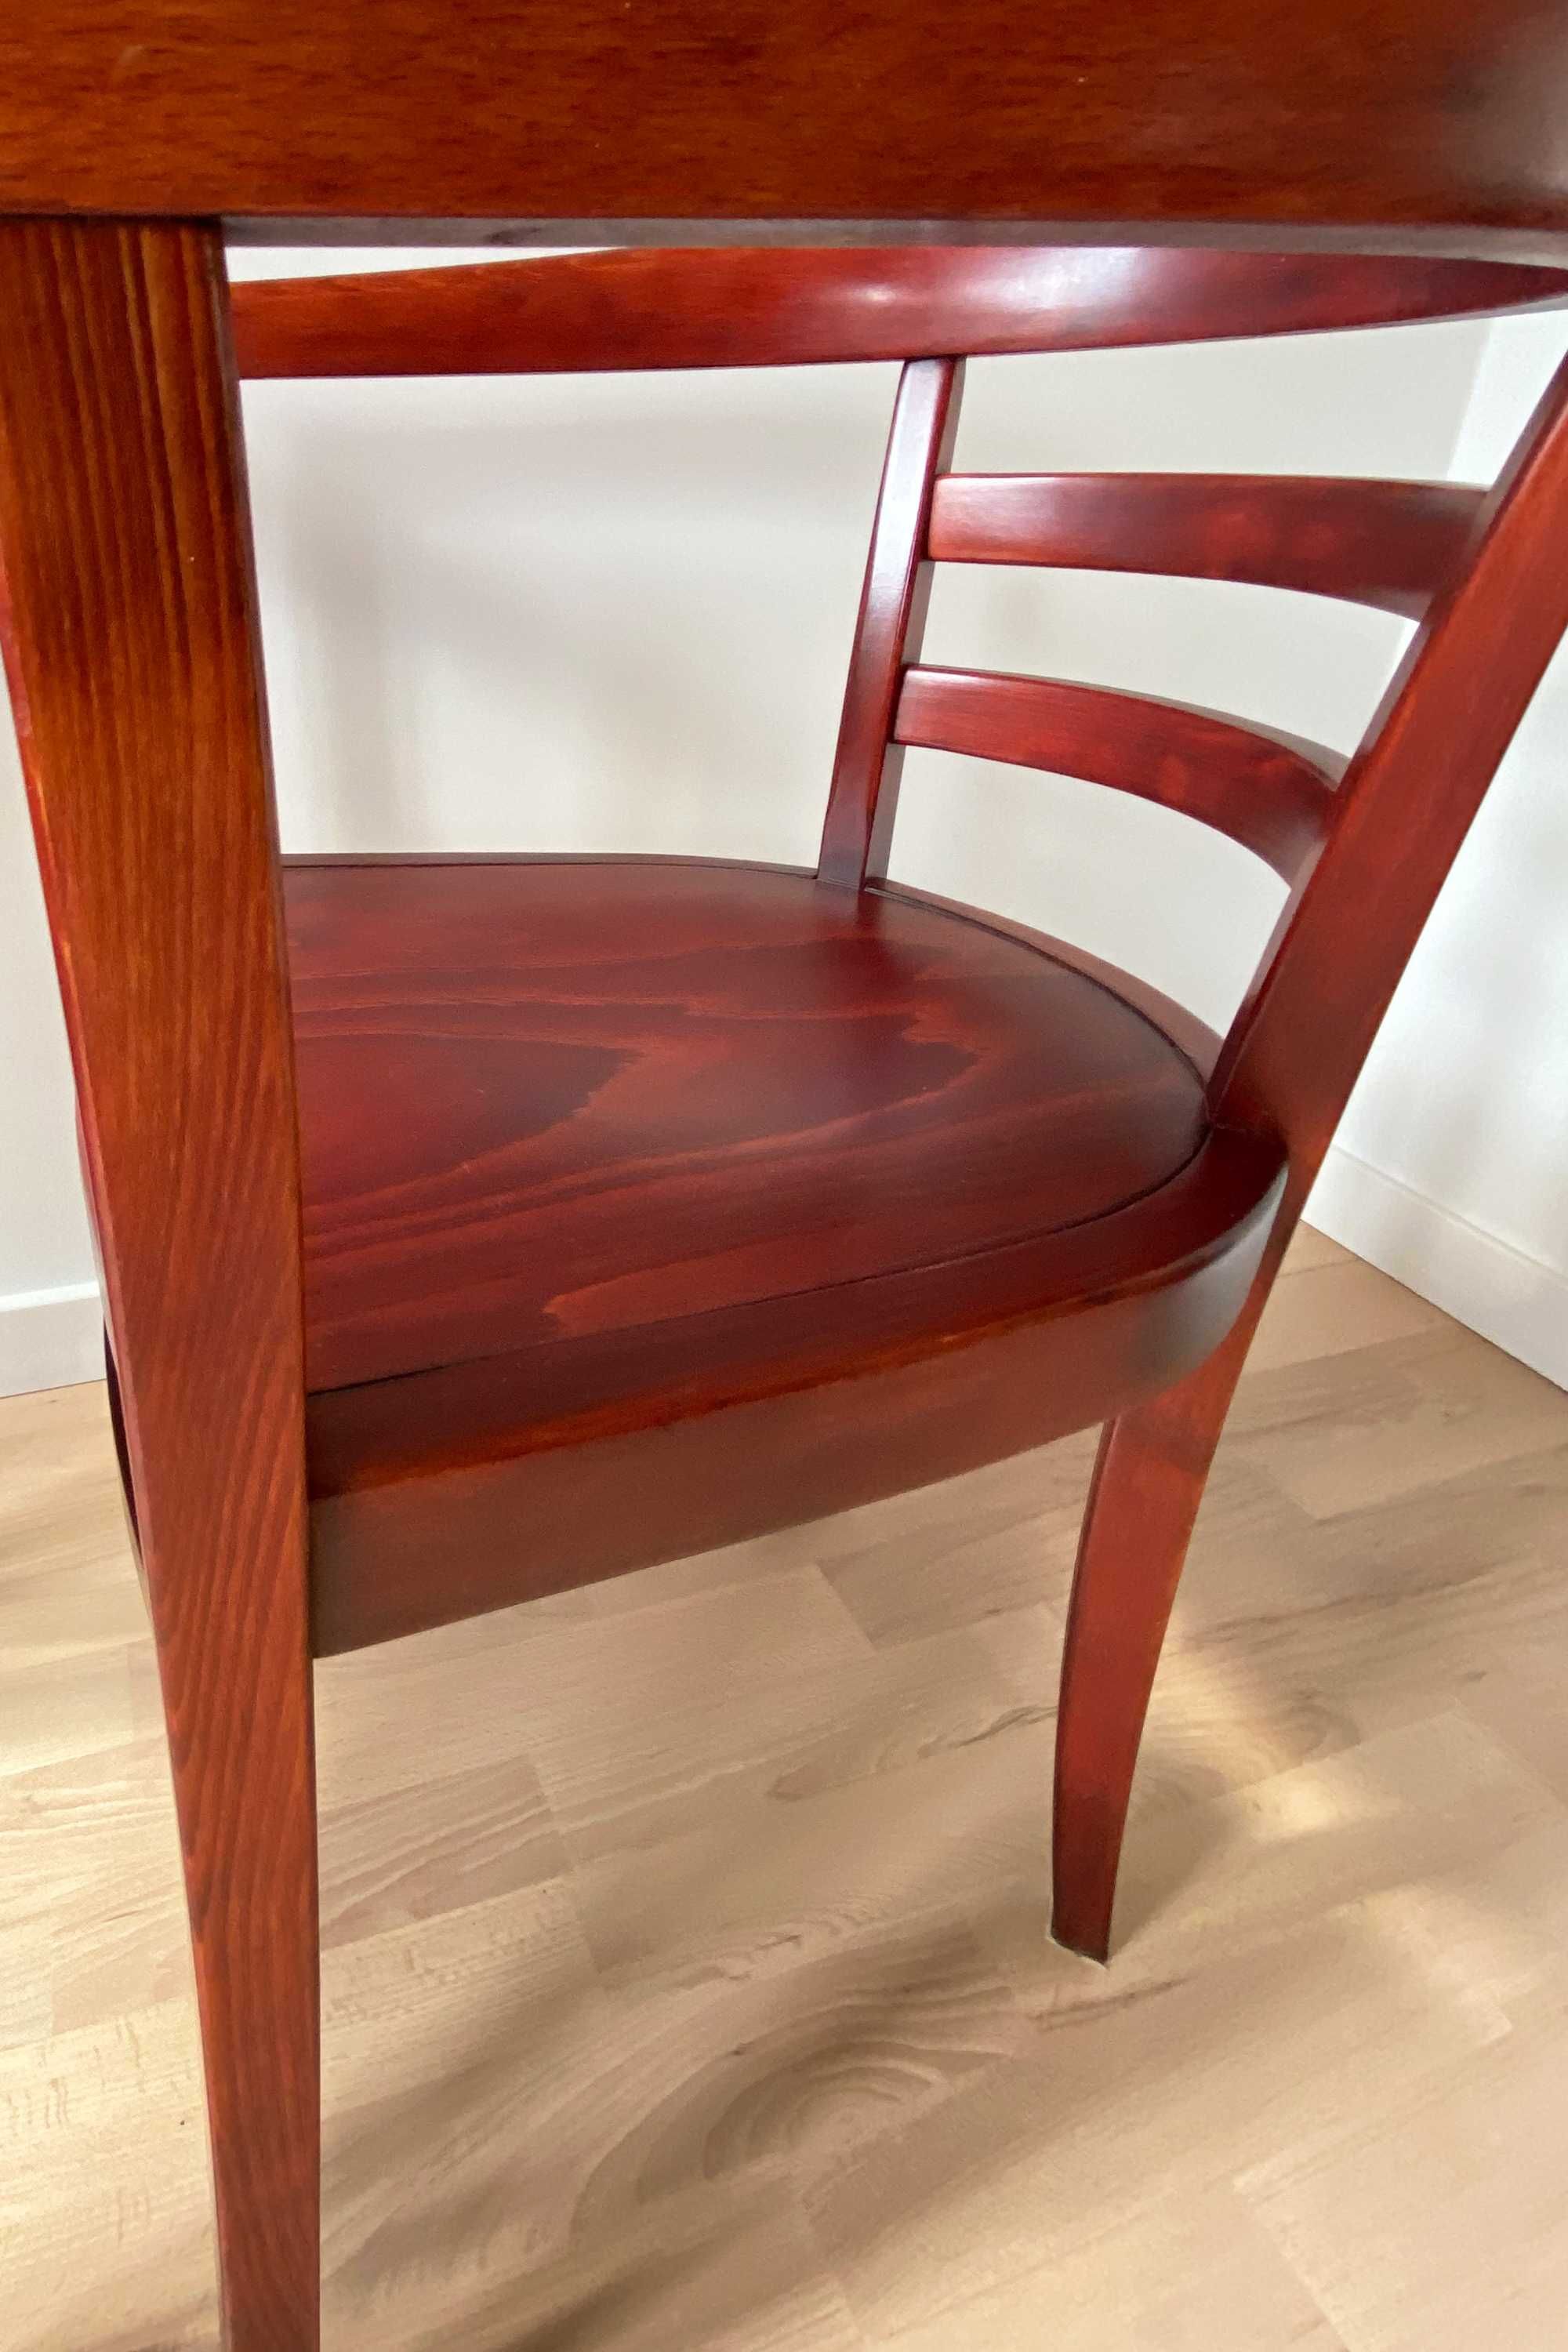 Krzesło Komplet dwóch krzeseł foteli drewno mid century modern